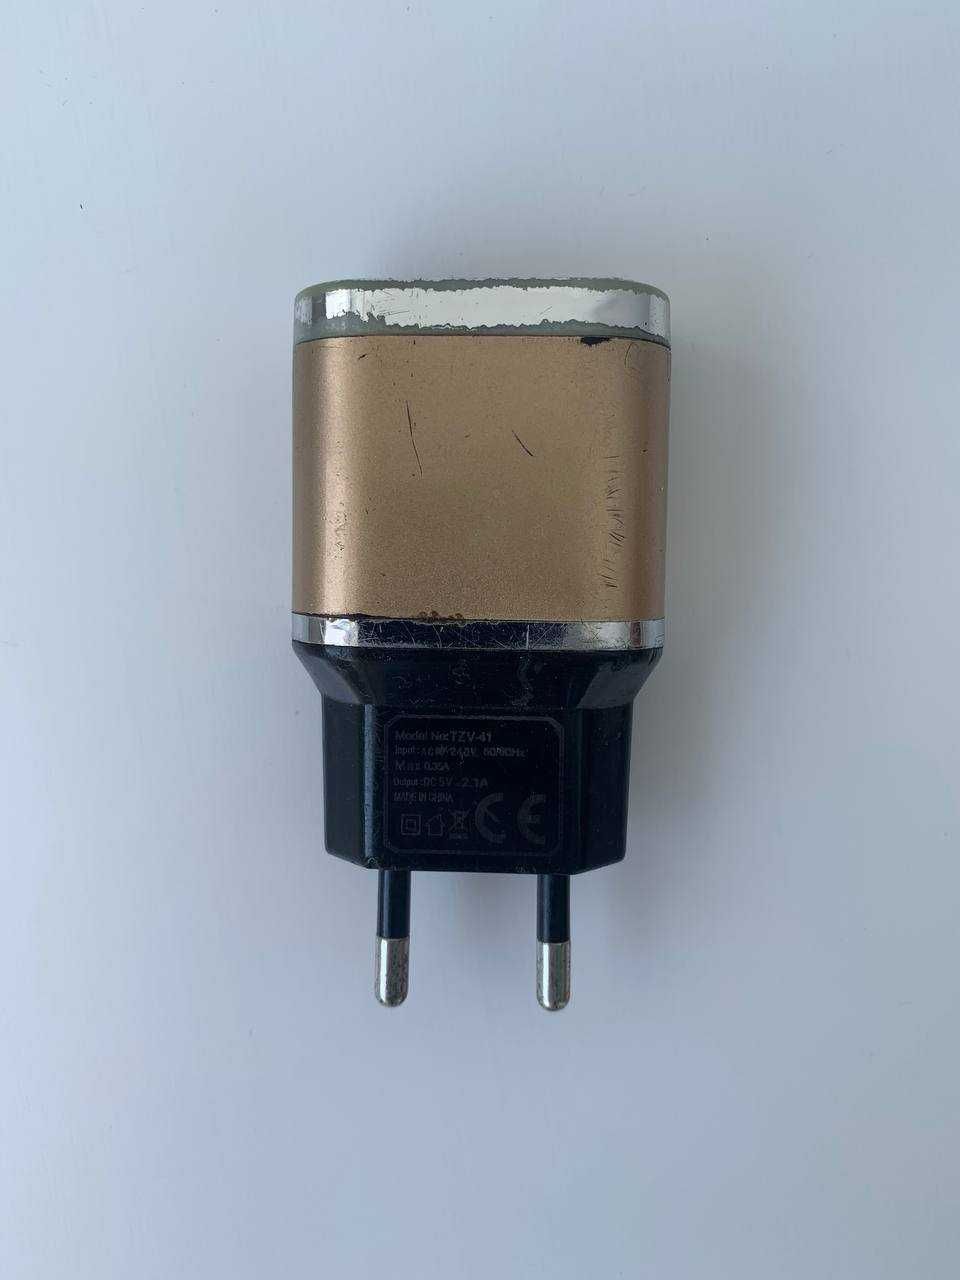 Зарядное устройство блок питания блочок TOTO TZV-41 Led Travel gold